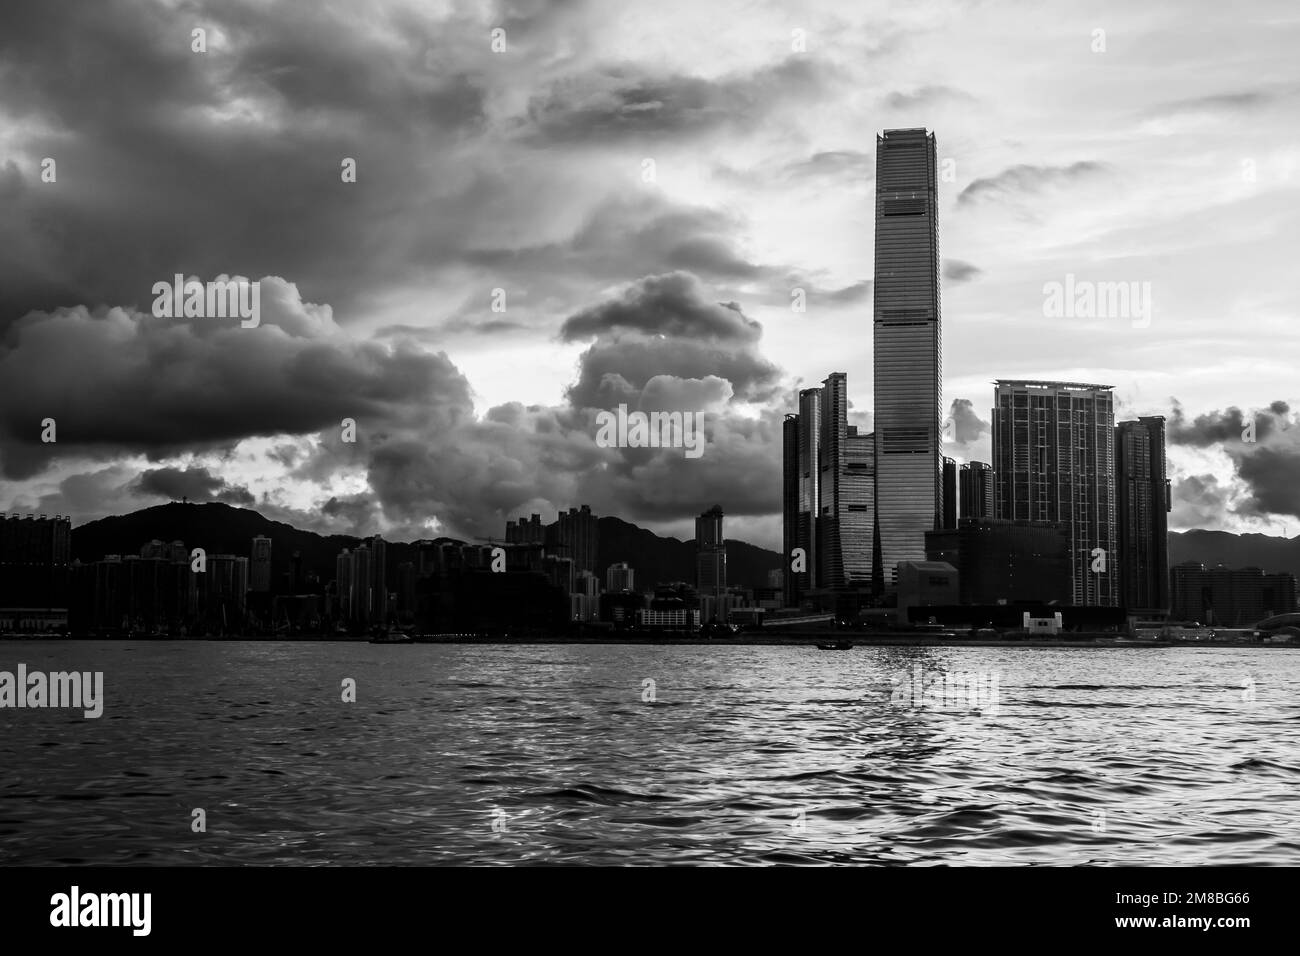 Die Sonne geht über Kowloon in Hongkong auf. Meer im Vordergrund. Gebäude in Silhouette. In Schwarz und Weiß. Stockfoto